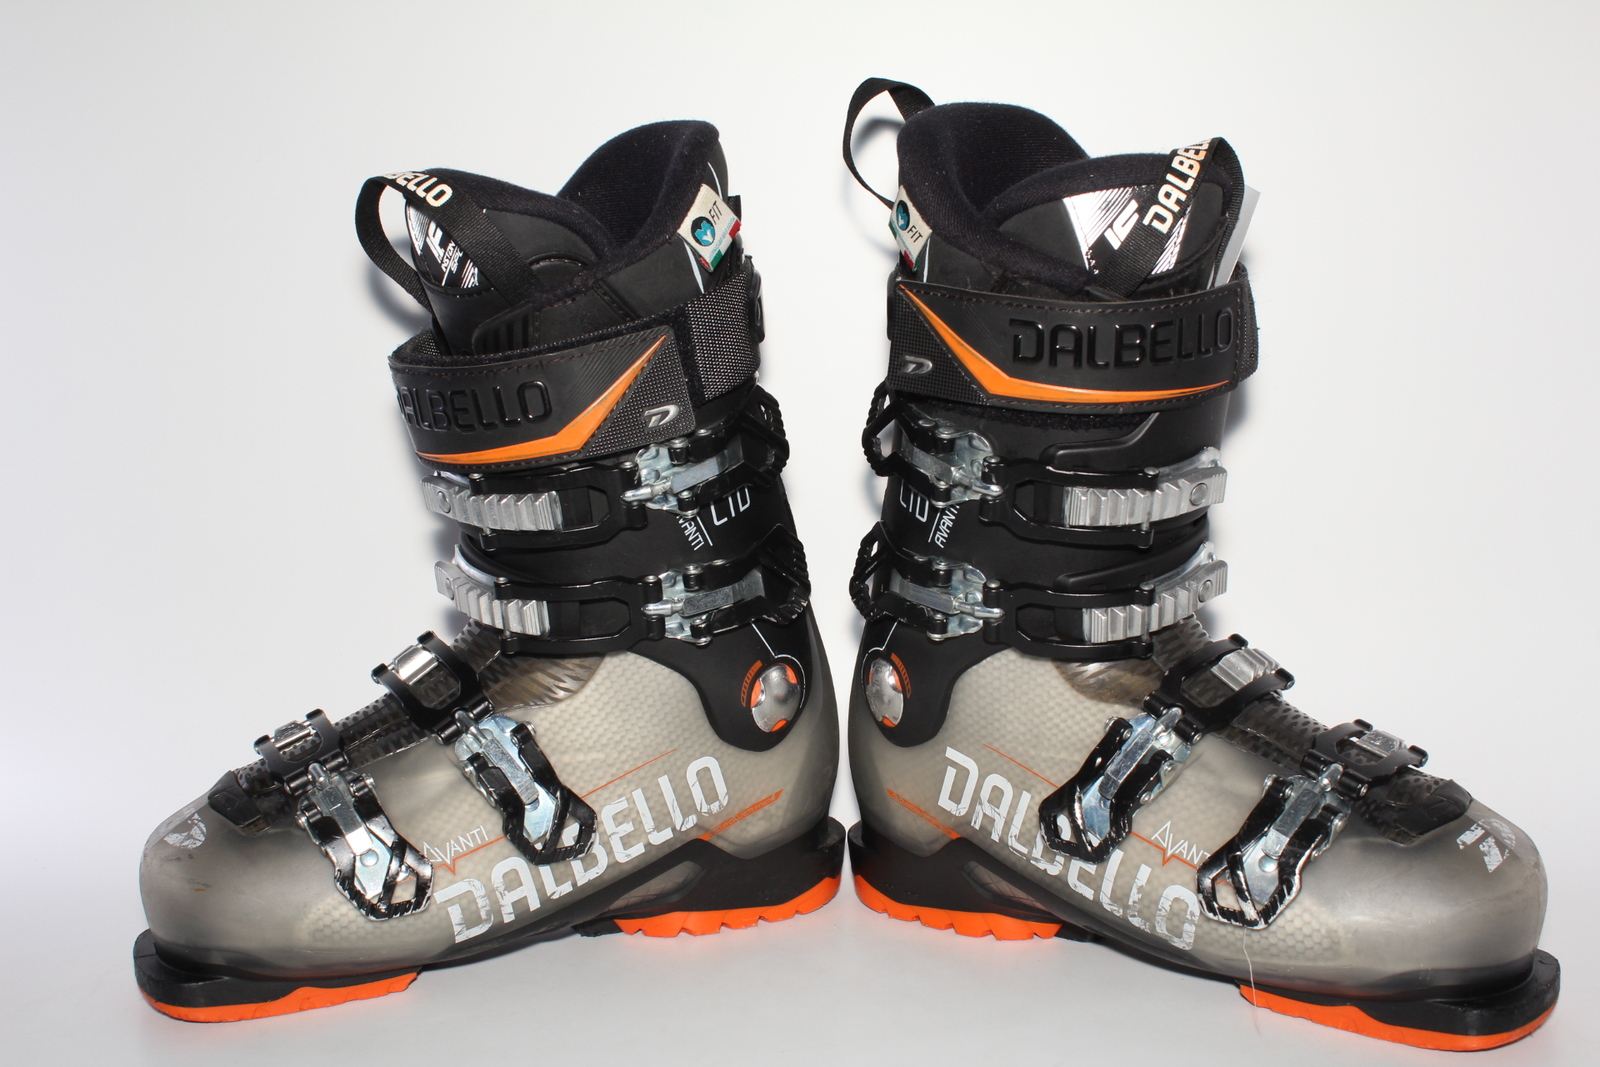 Lyžařské boty Dalbello Avanti  LTD vel. EU40 flexe 80